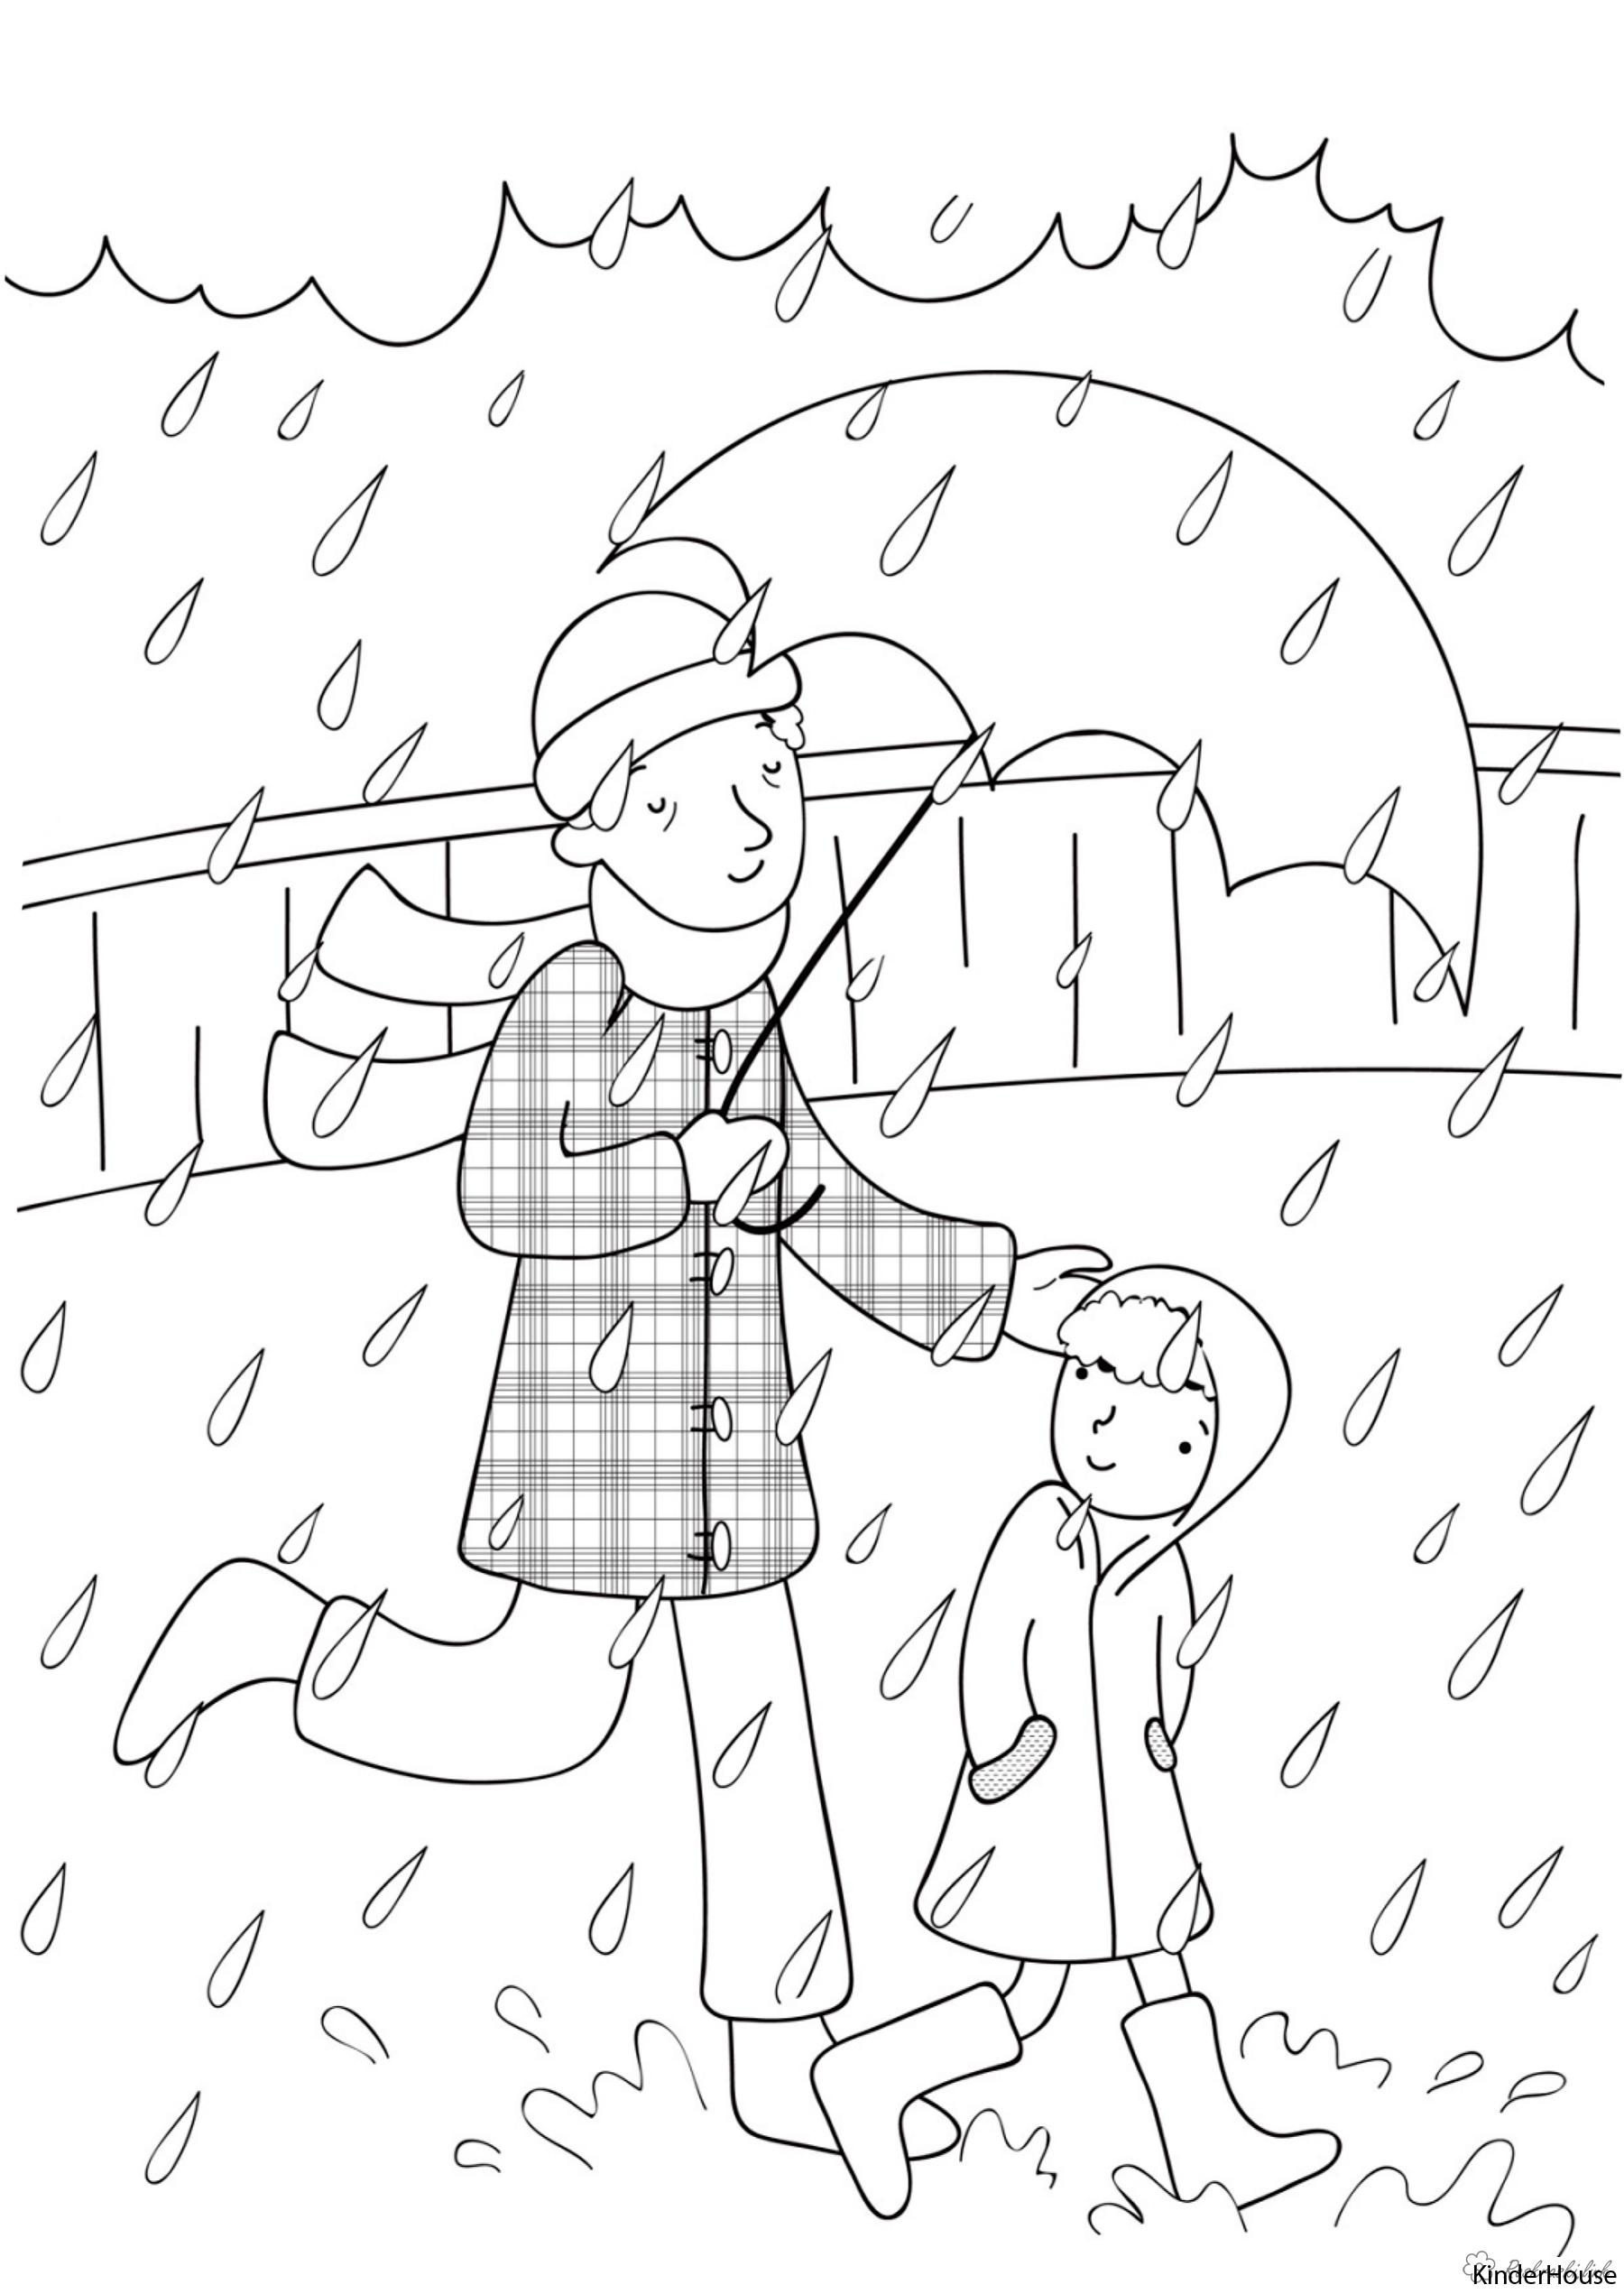 Розмальовки дітей Свято 1 червня День захисту дітей дощ парасольку